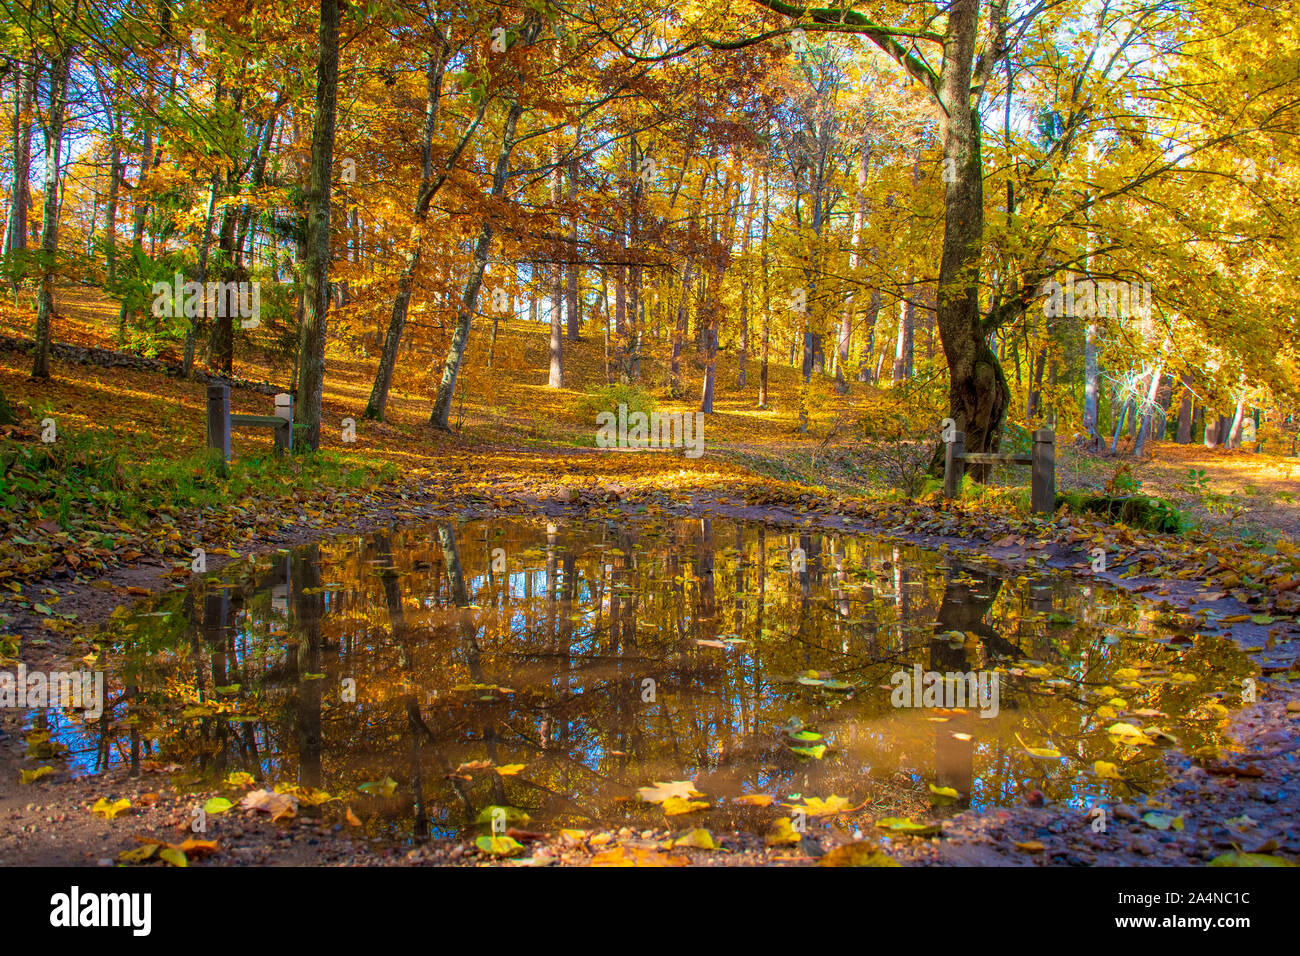 Merveilleux paysage d'automne avec de beaux arbres aux couleurs jaune et orange et réflexions dans une flaque Banque D'Images